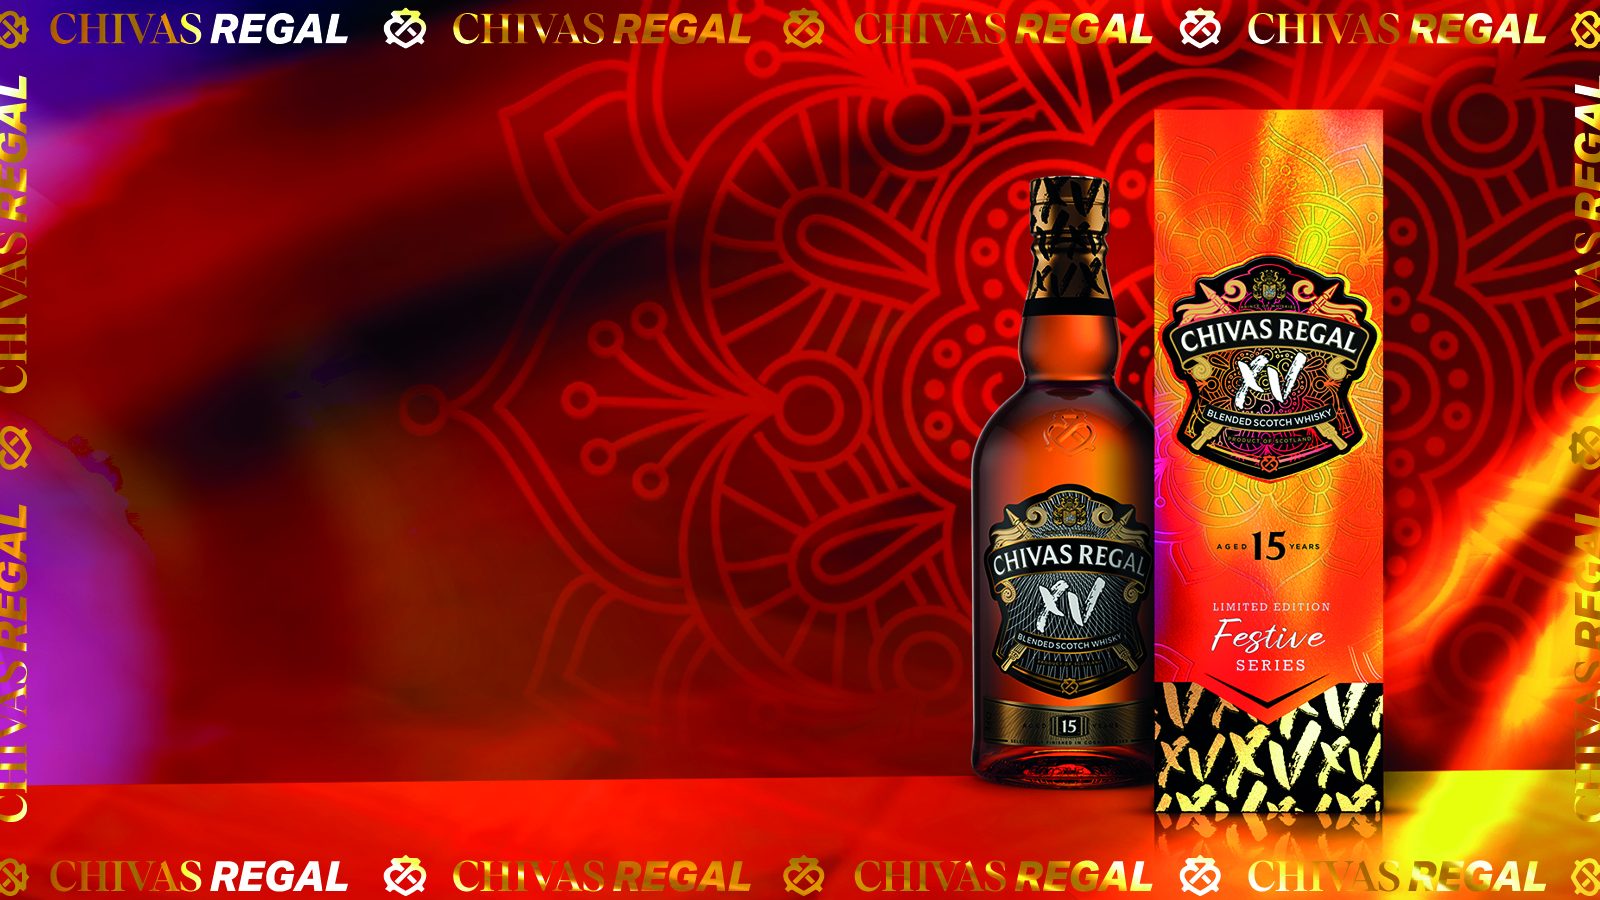 Chivas XV Blended Scotch Whisky Festive Series